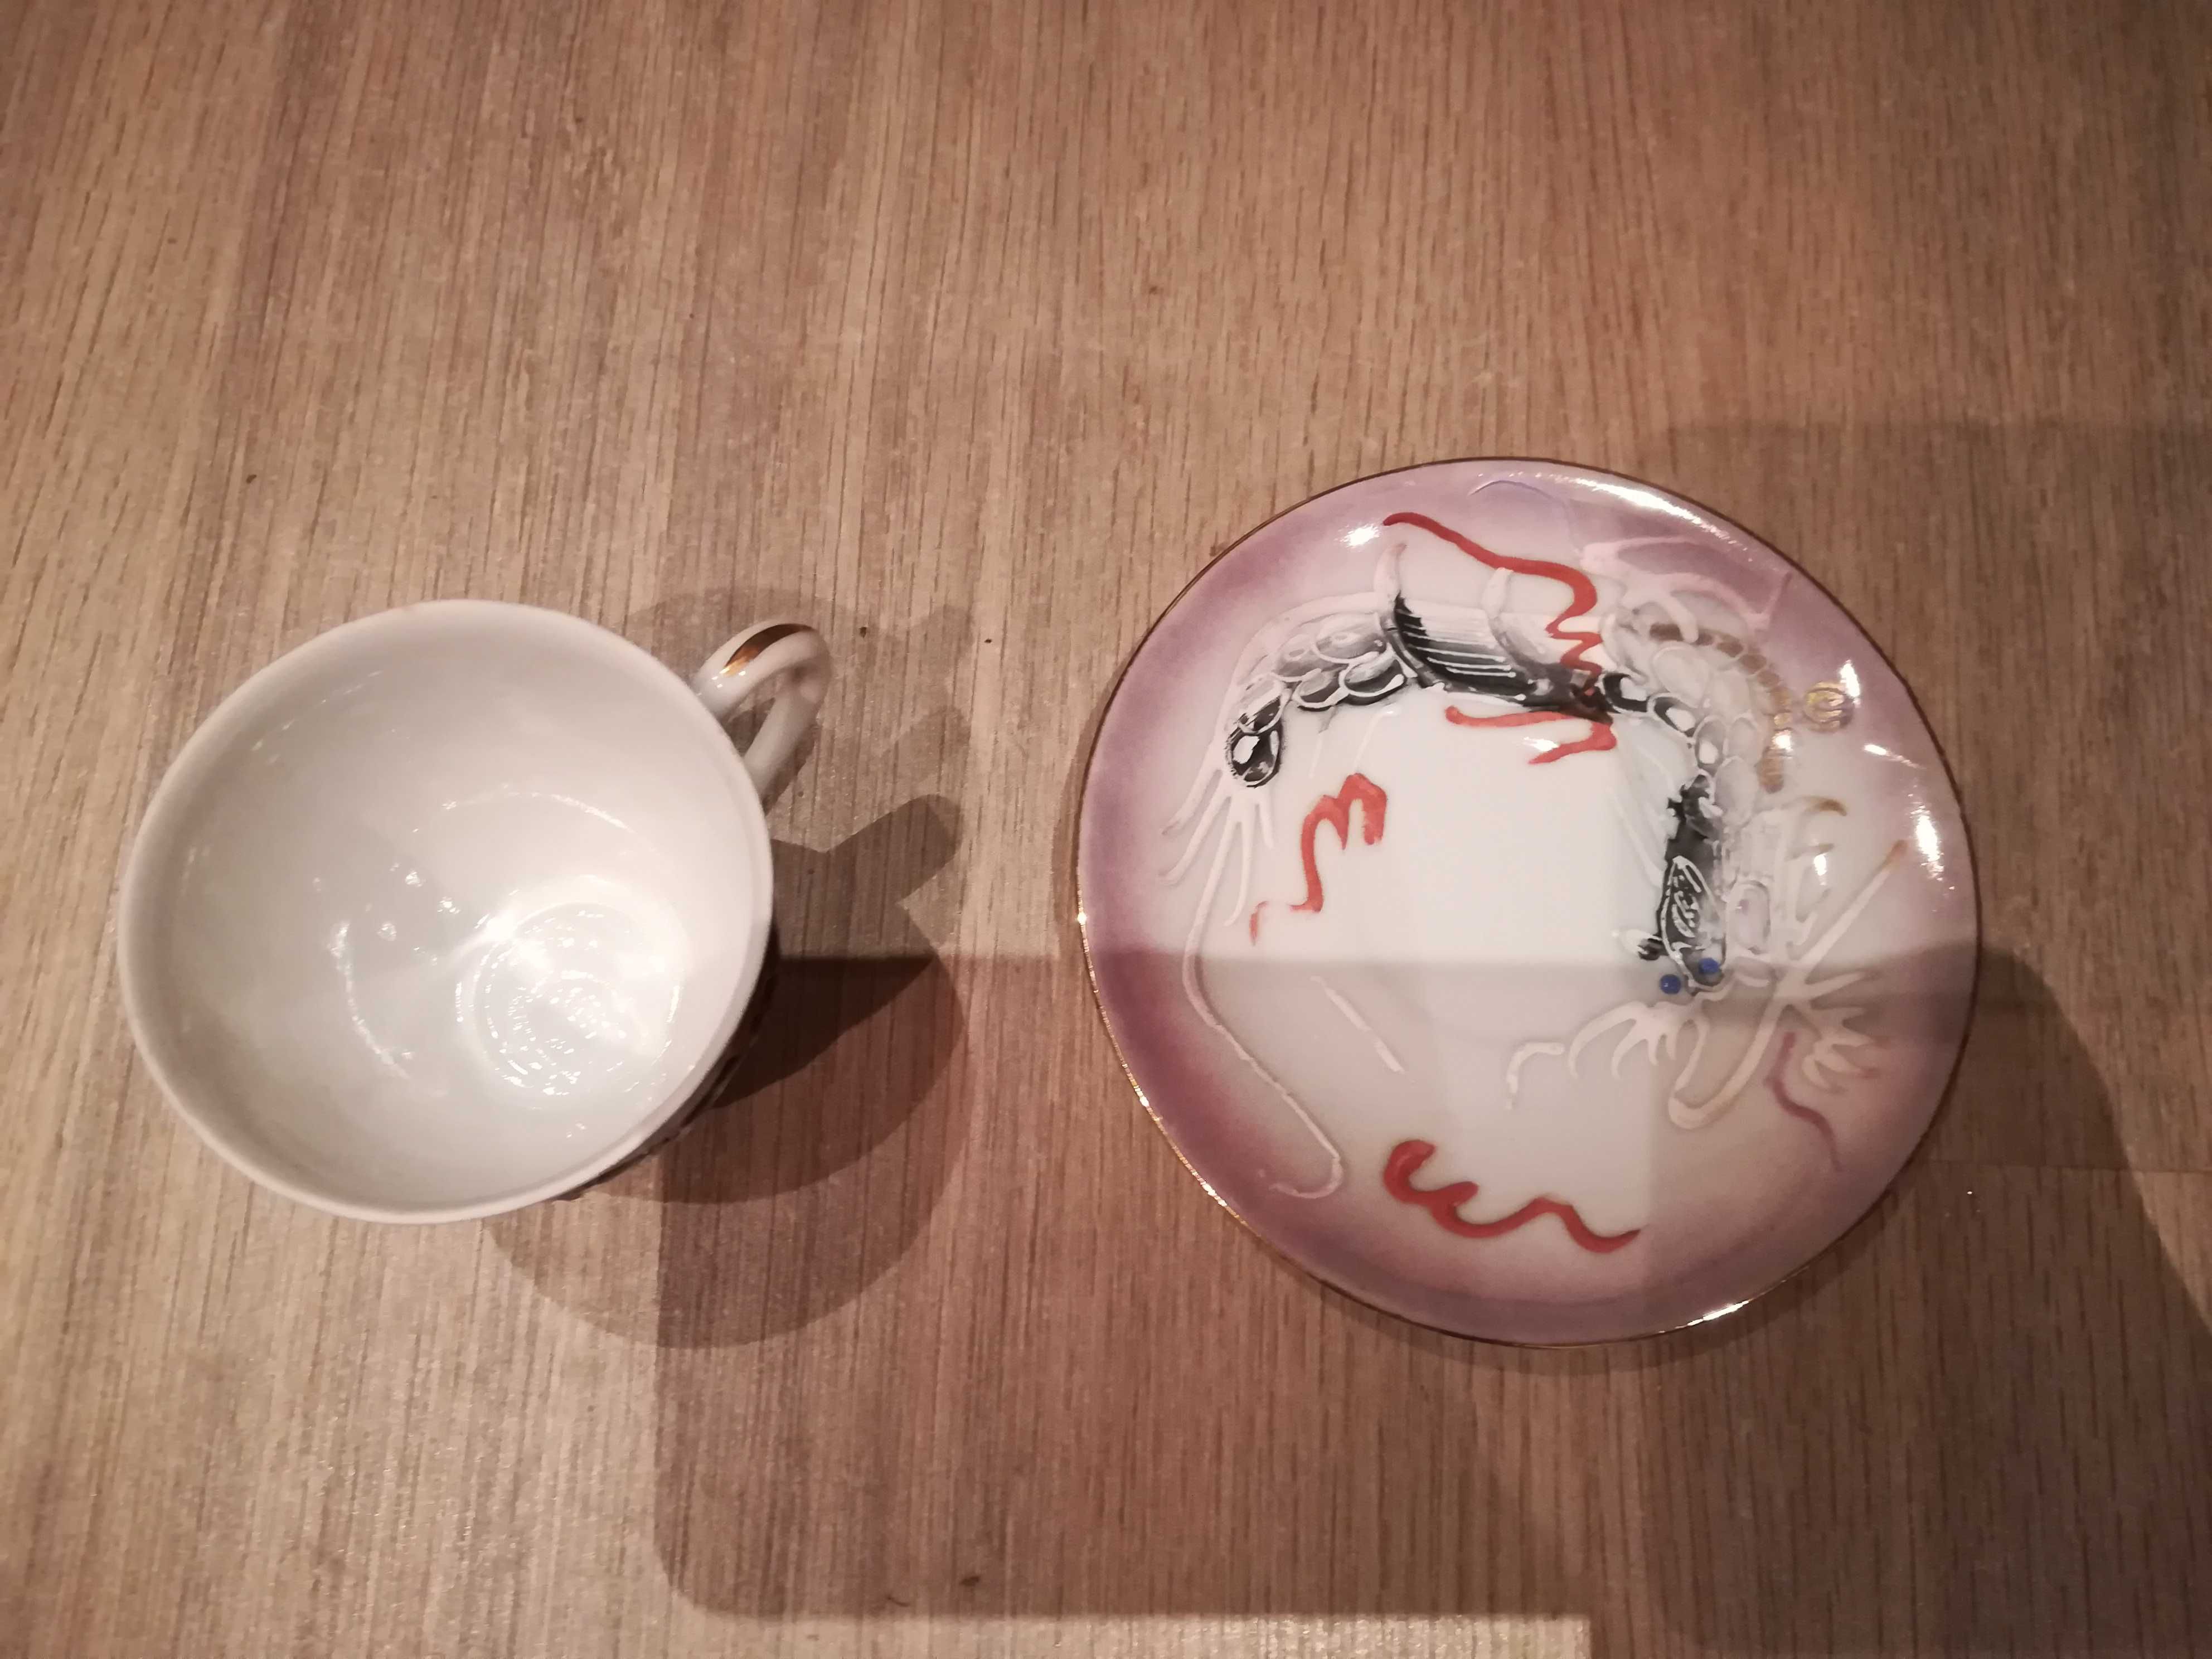 Conjunto de chá chinês em porcelana (com rosto no fundo da chávena)